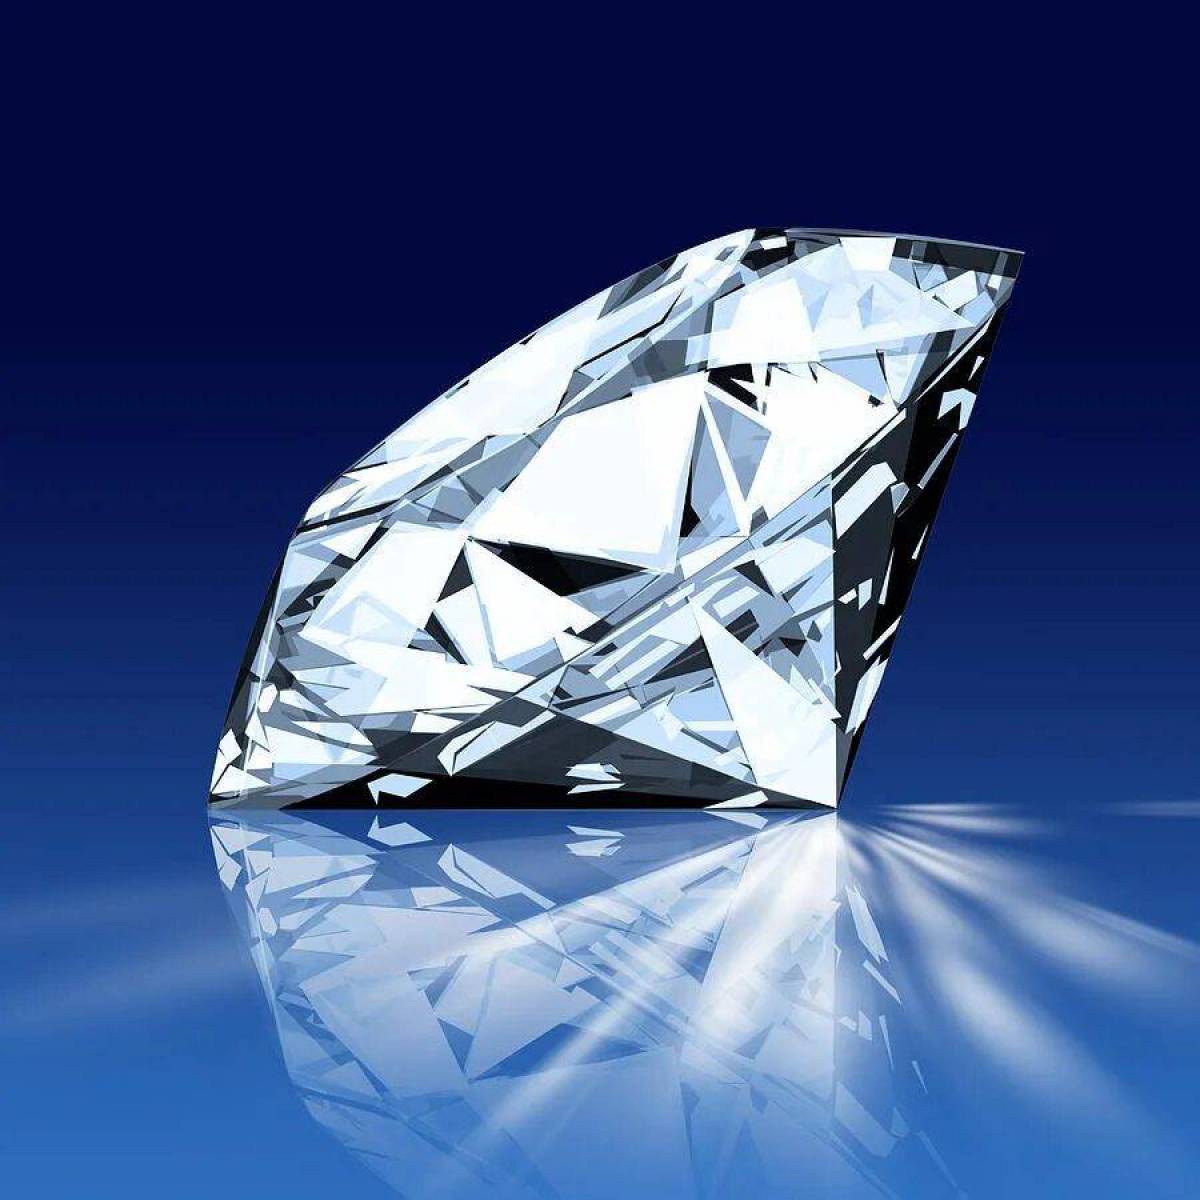 Diamond crystal